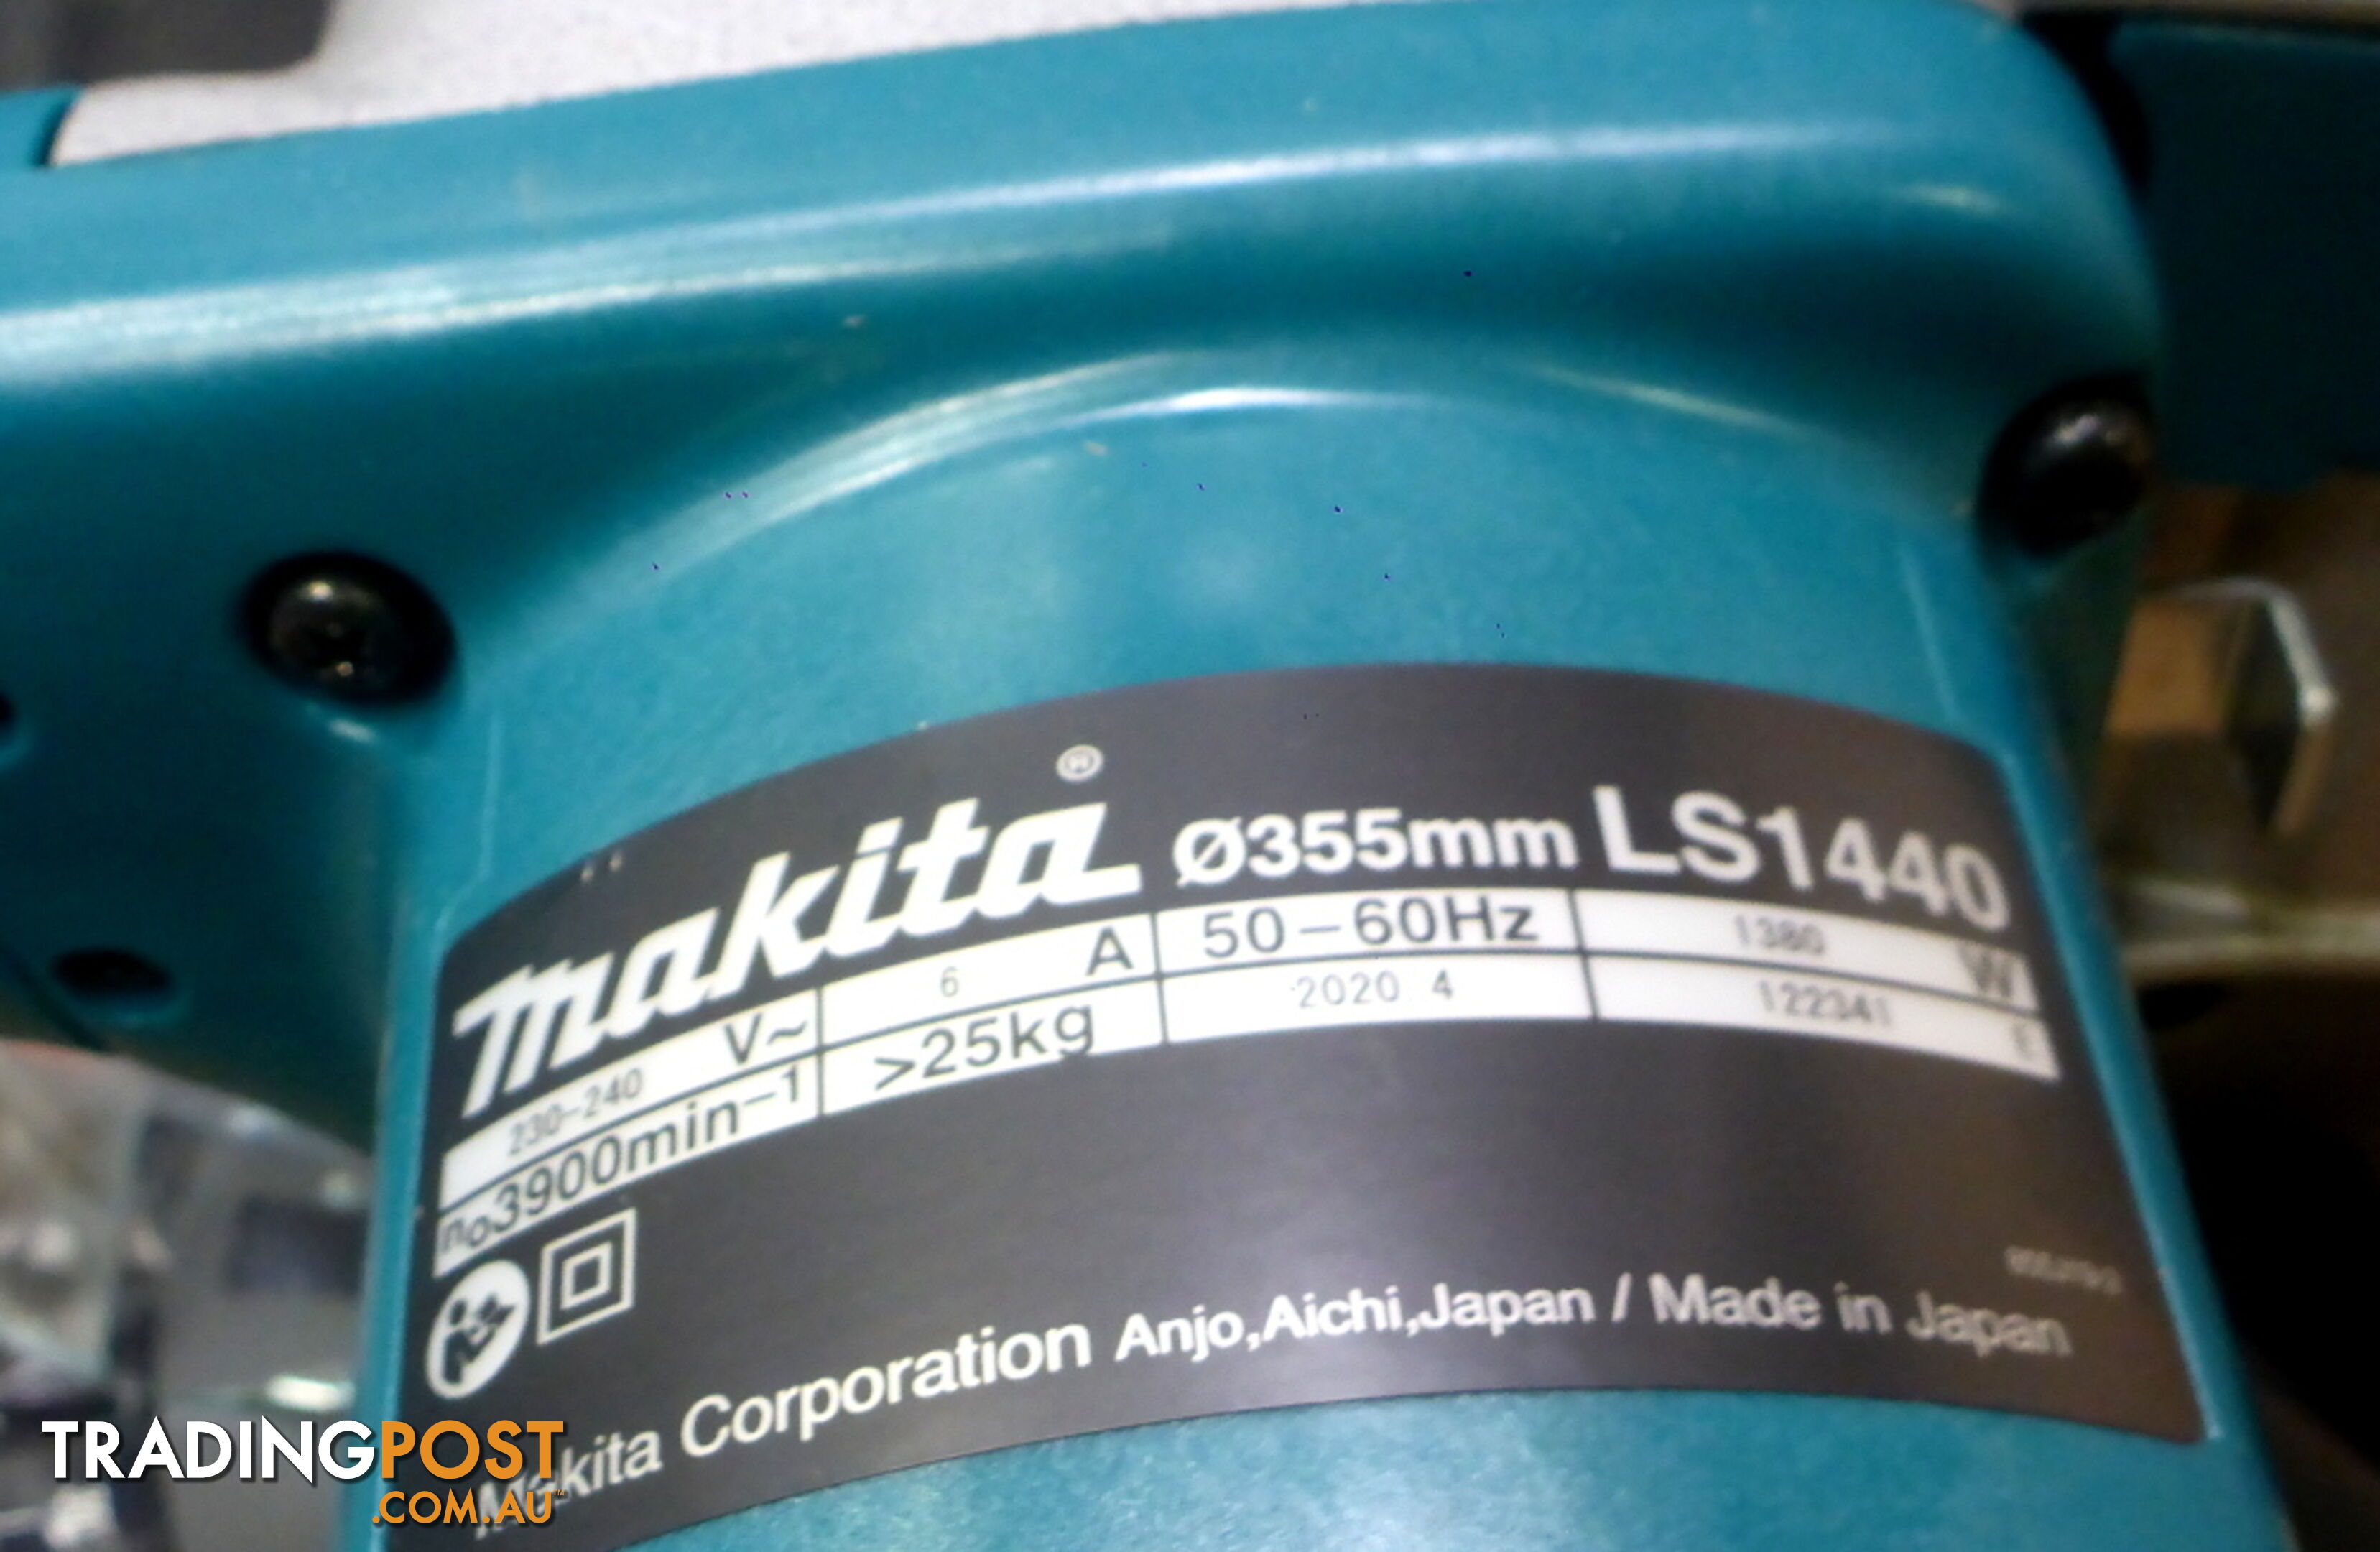 New Makita LS1440 355mm (14") Mitre / Drop Saw $760 off RRP